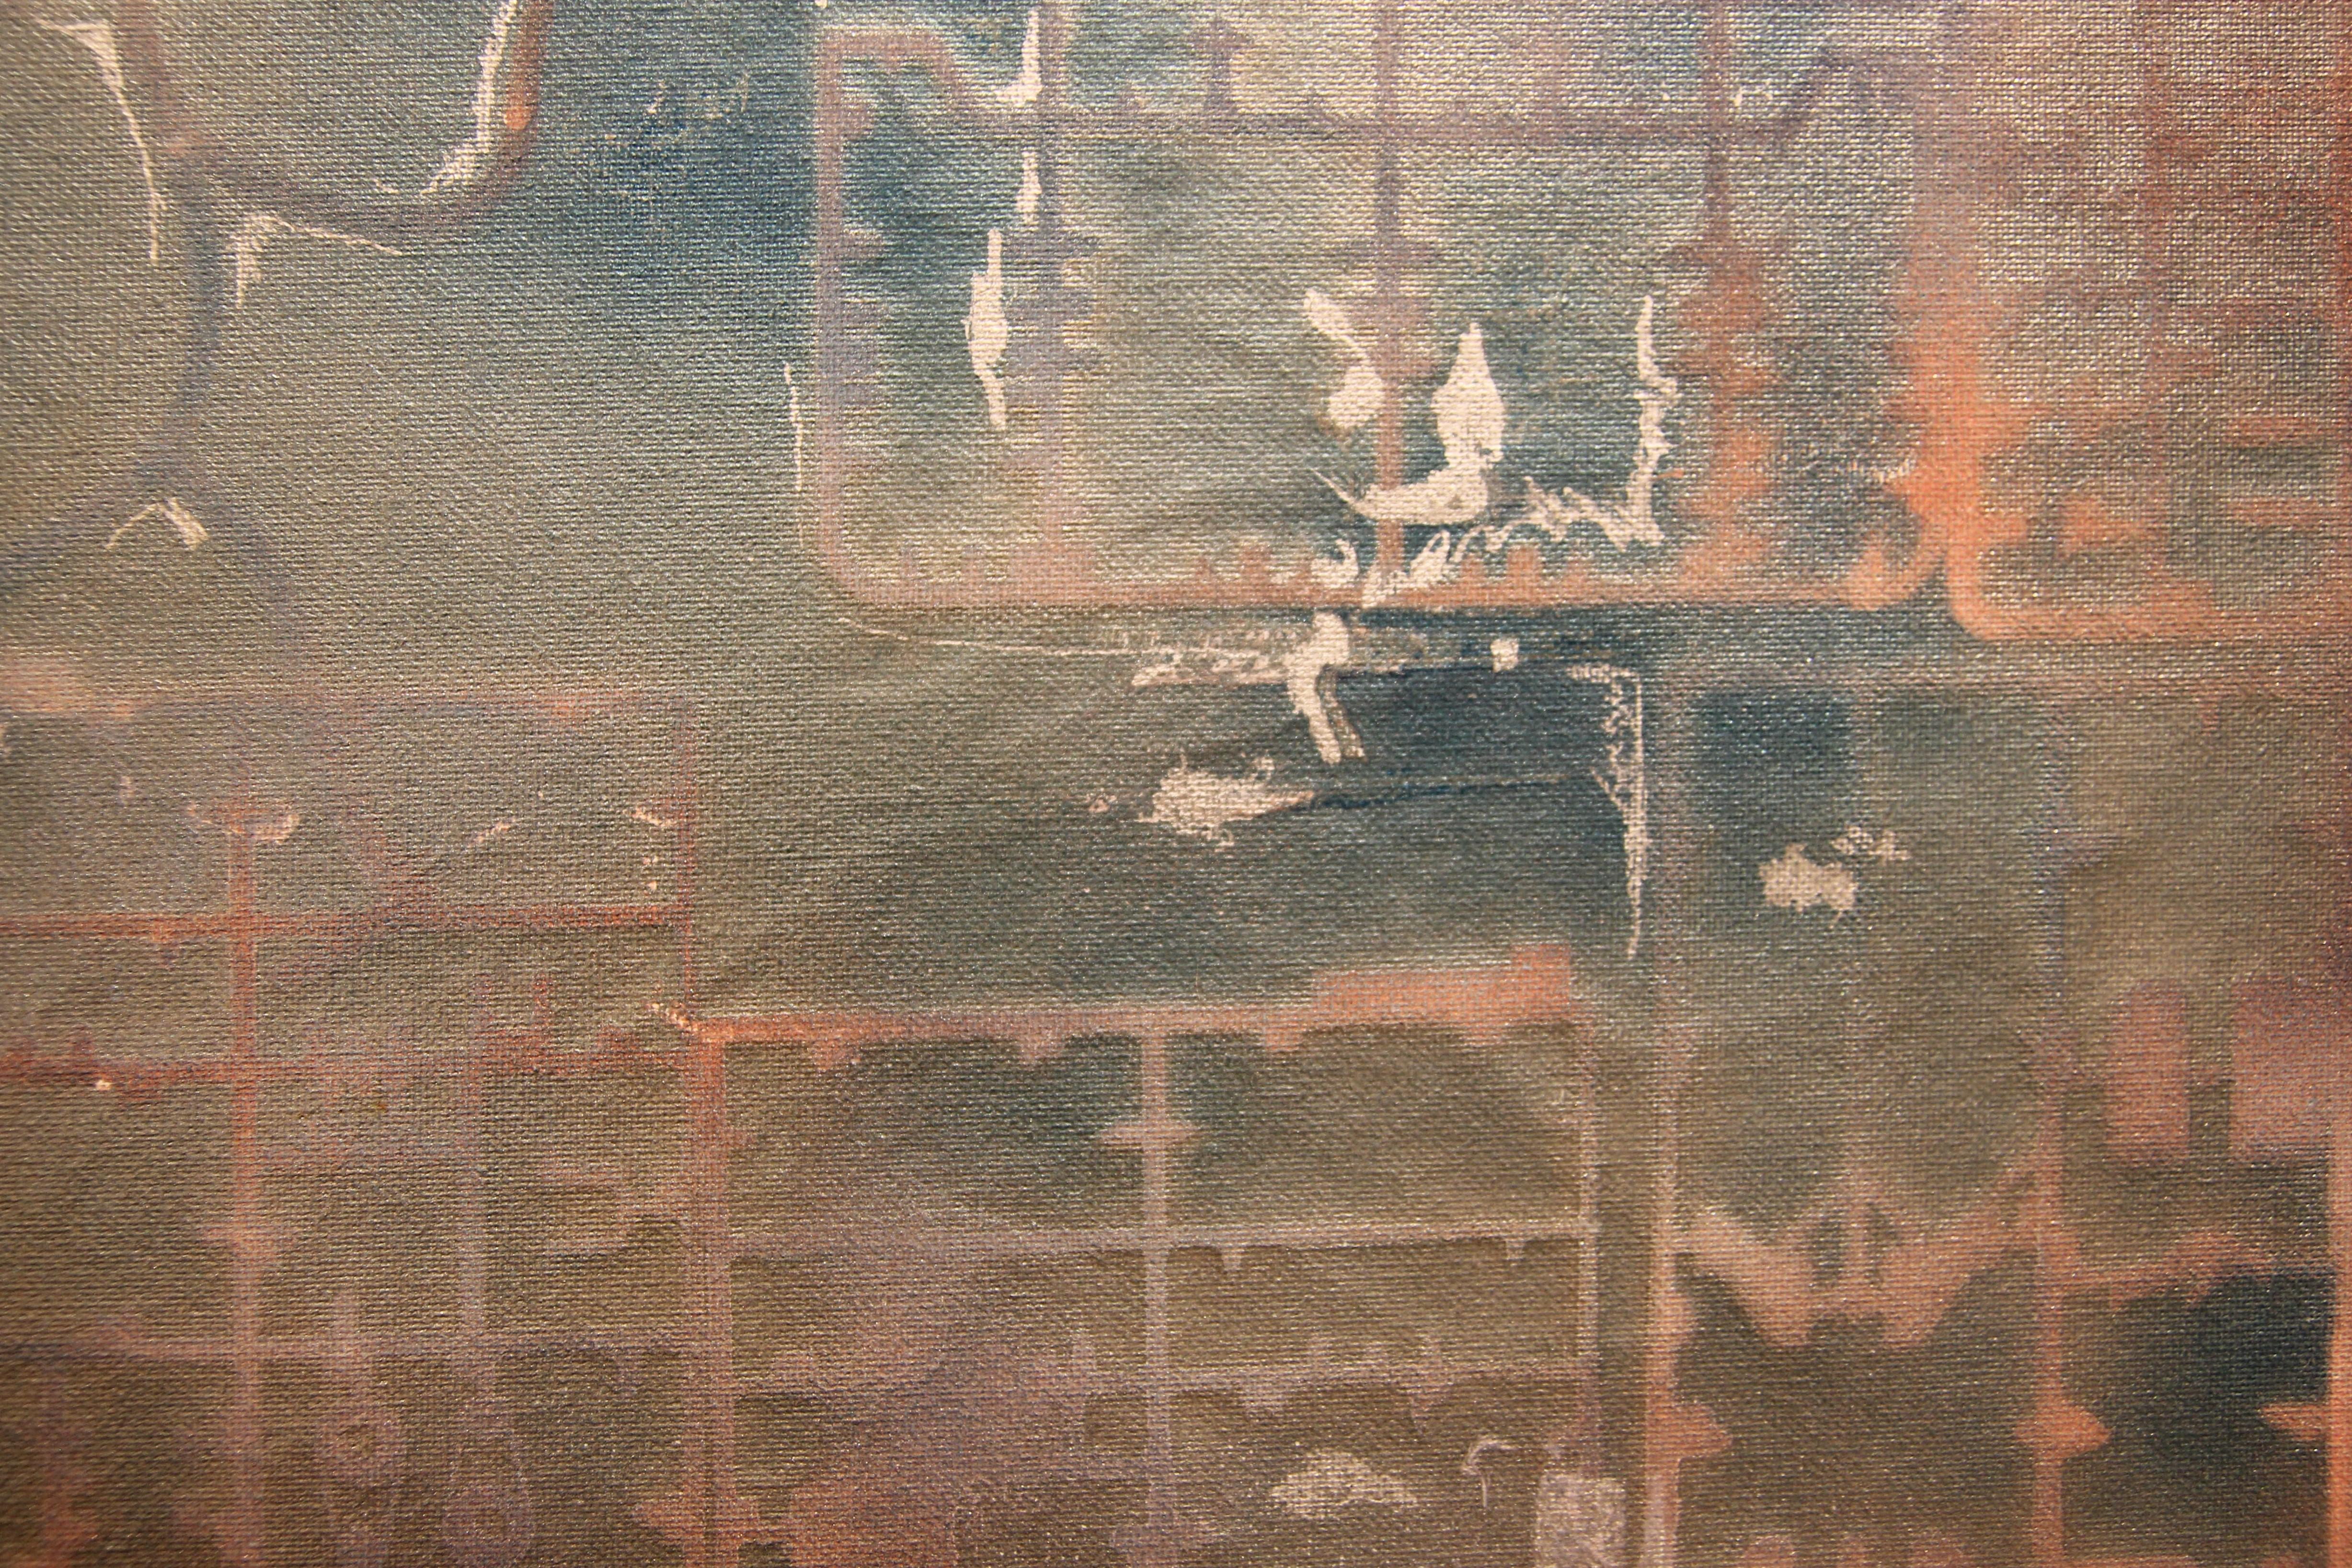 Abstrakte geometrische Malerei des Künstlers Philip Durbin aus Houston, Texas. Rosa und blau gefärbtes Gemälde mit geometrischen, schablonenartigen Mustern und einer abstrakten Figur in einer Kochuniform in der oberen linken Ecke. Gerahmt in einem